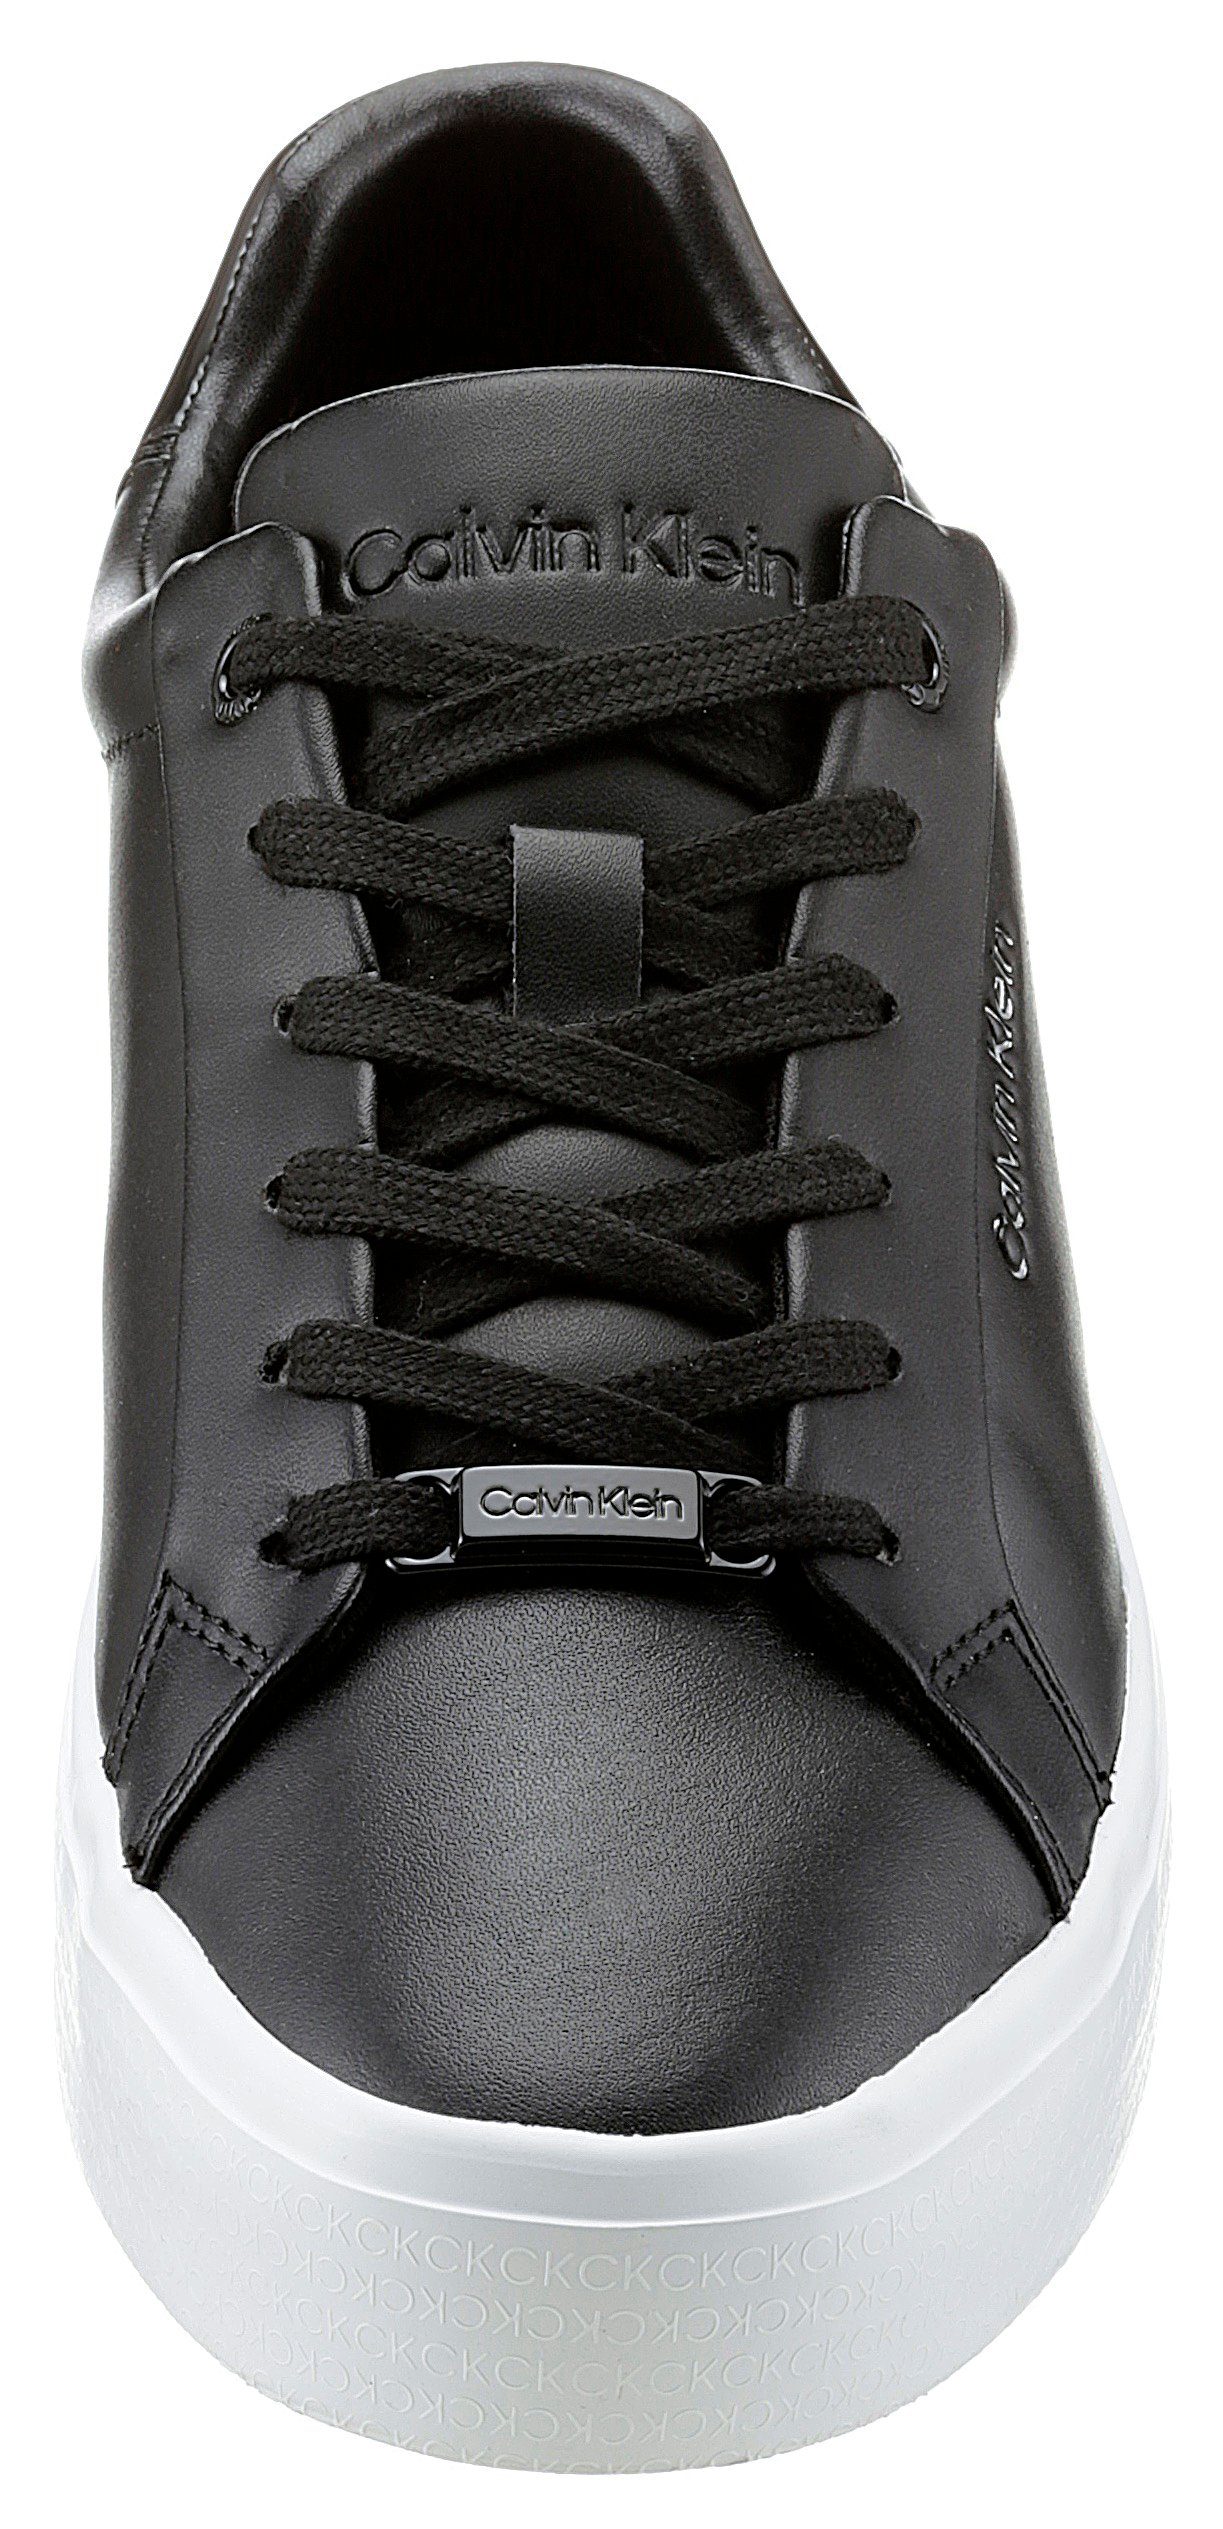 CK-Initialen UP LACE VULC Klein Plateau FOX-LTH Calvin in schwarz am NANO Sneaker